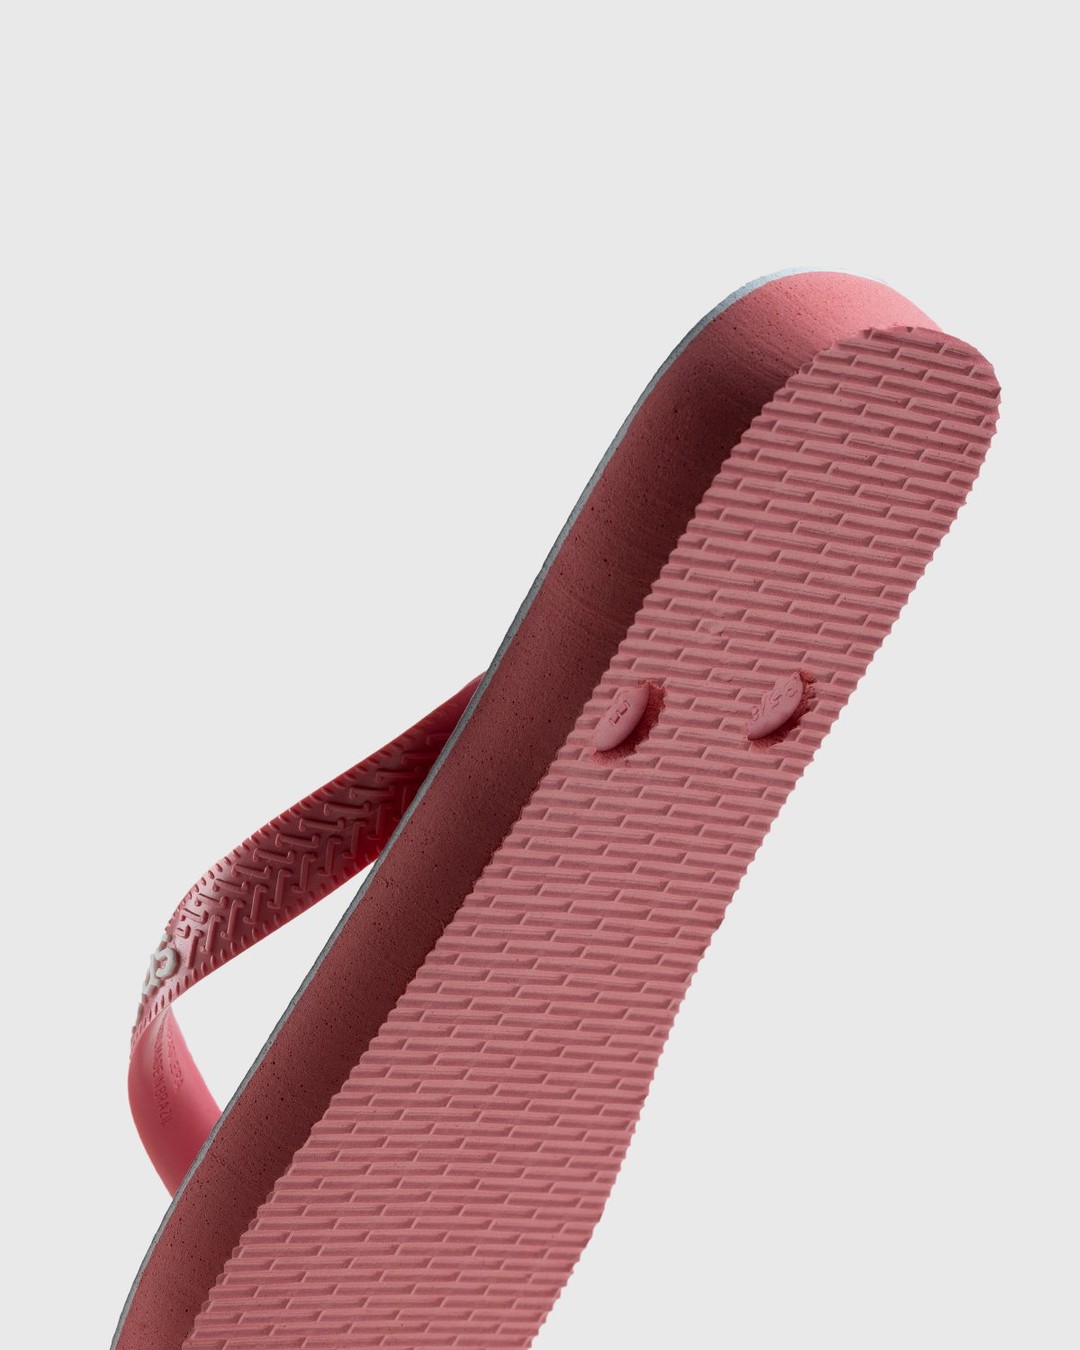 BAPE – Top Pink - Slides - Pink - Image 5